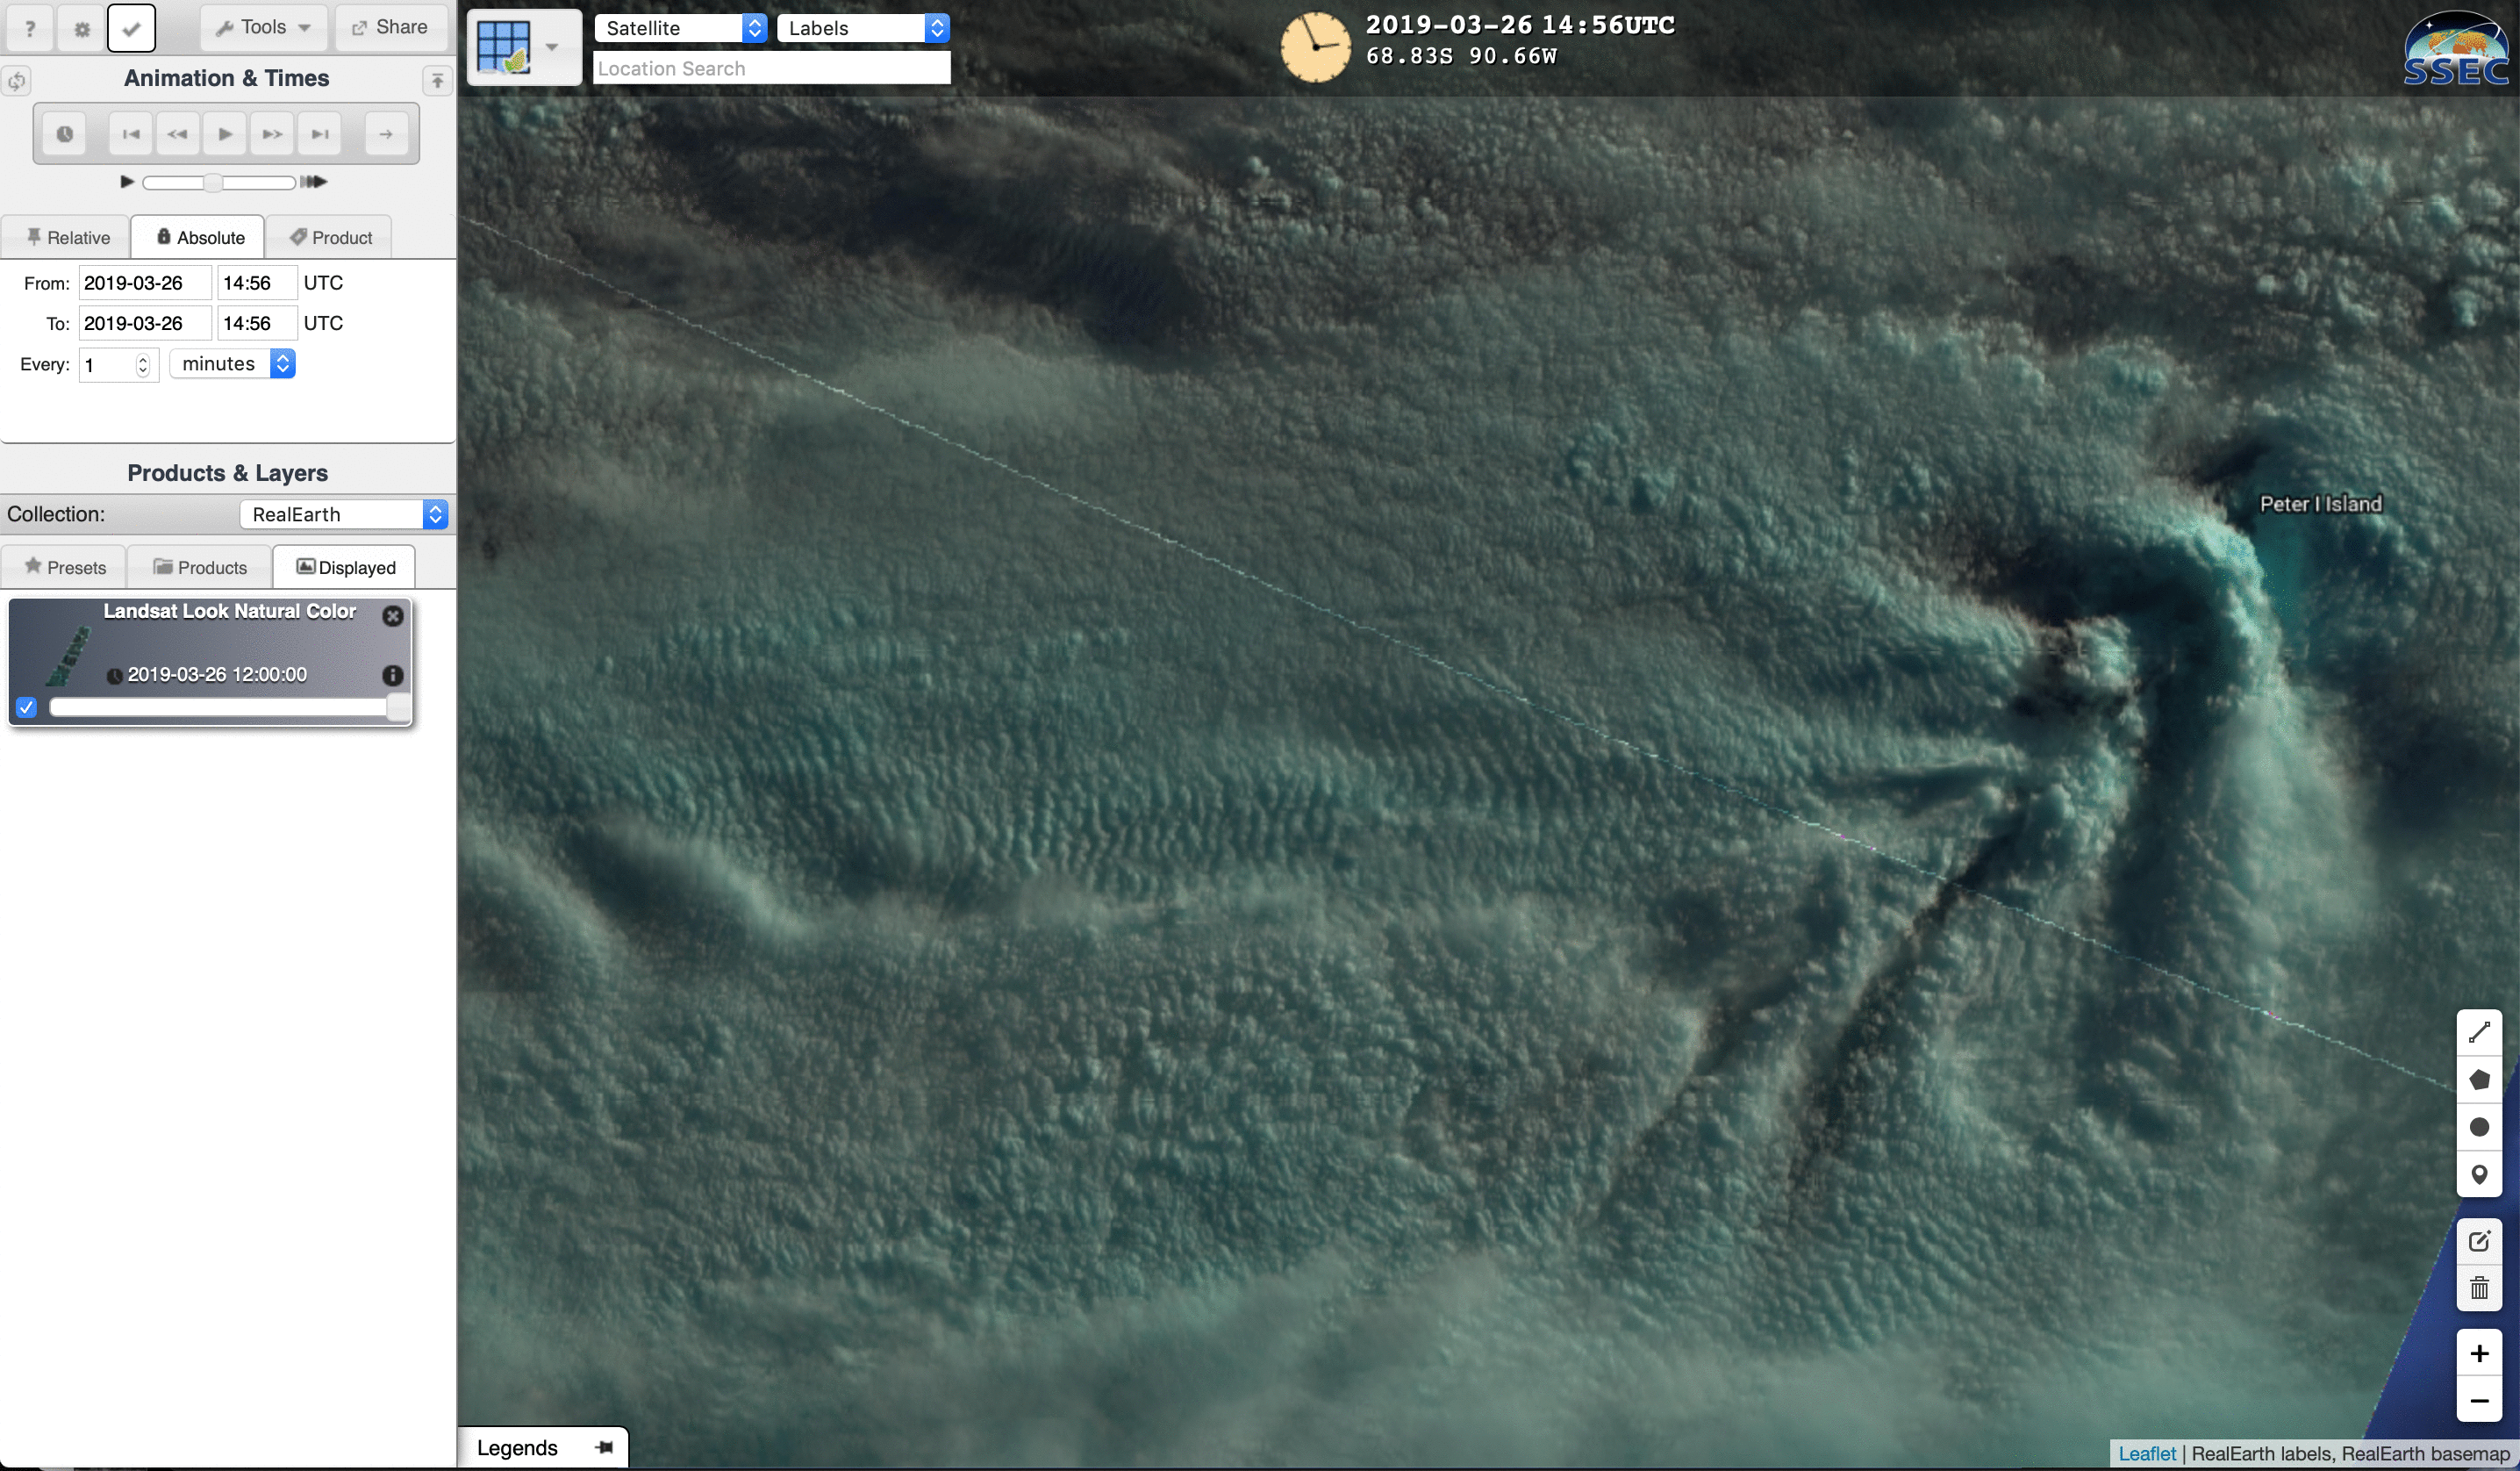 Landsat-8 False Color image [click to enlarge]